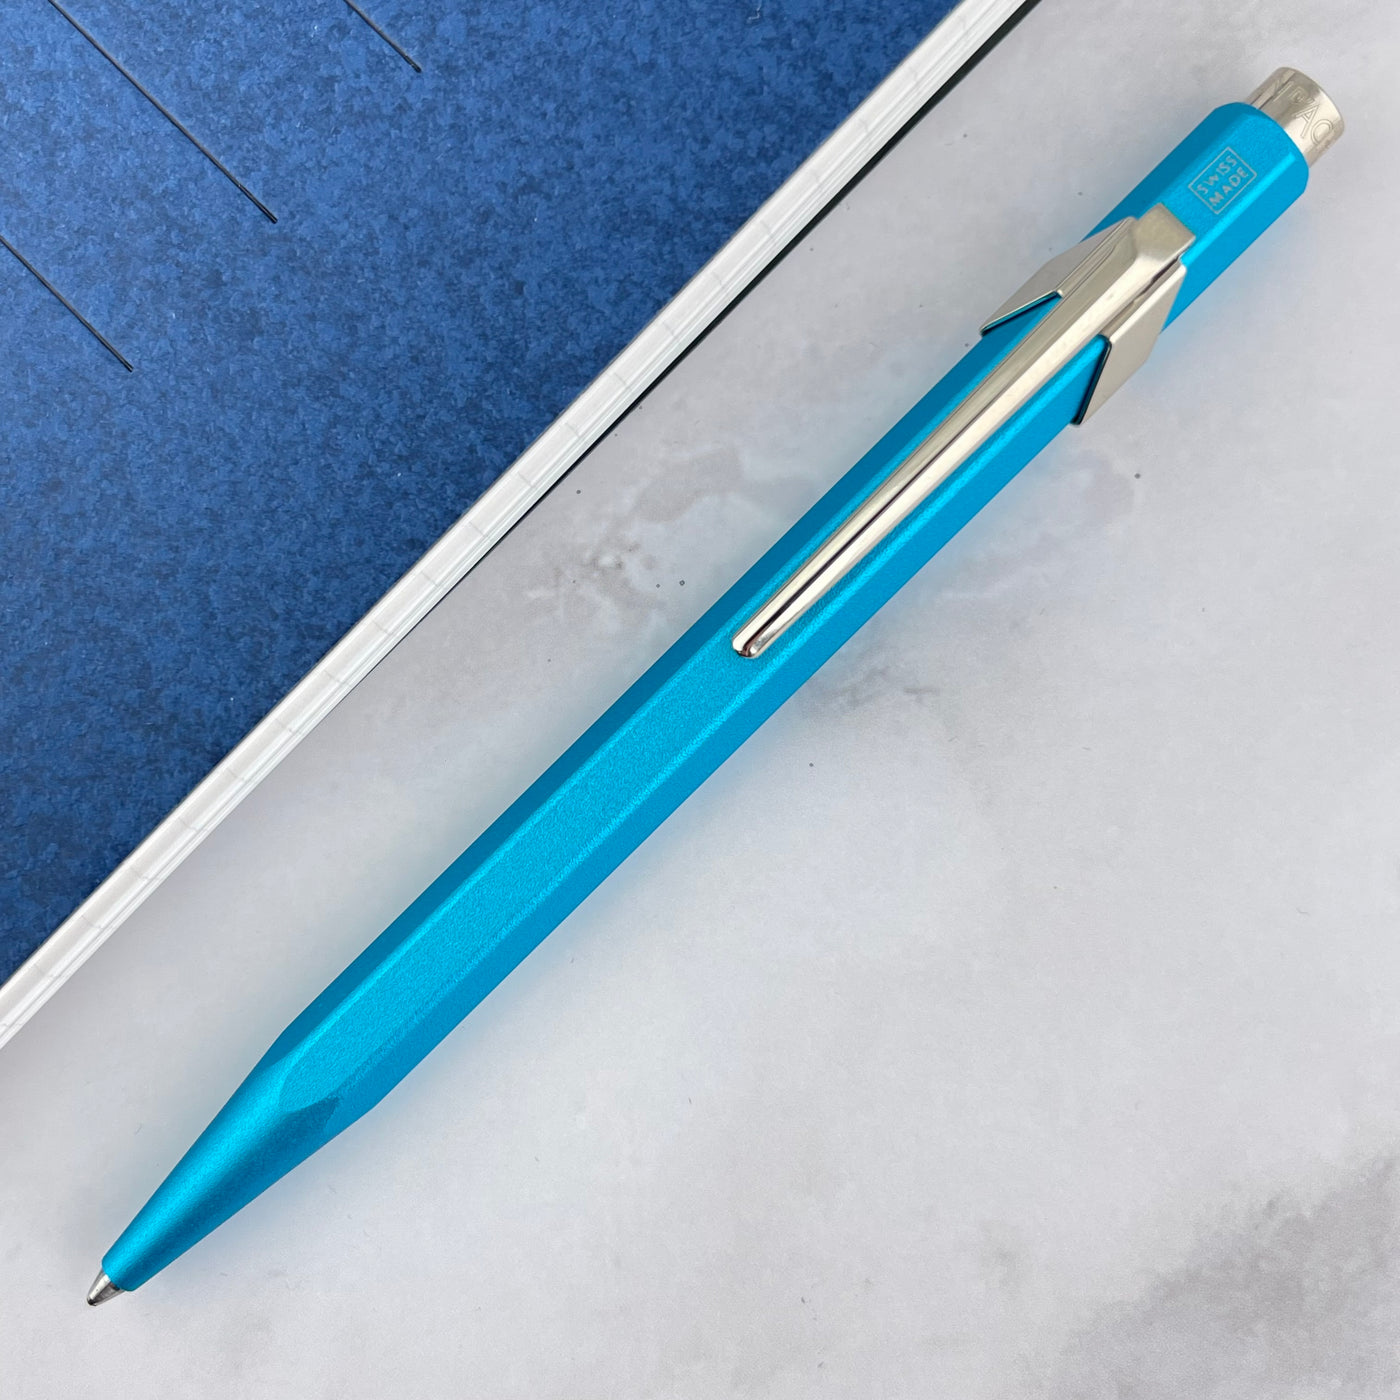 Caran d'Ache 849 Colormat-X Ballpoint Pen - Turquoise